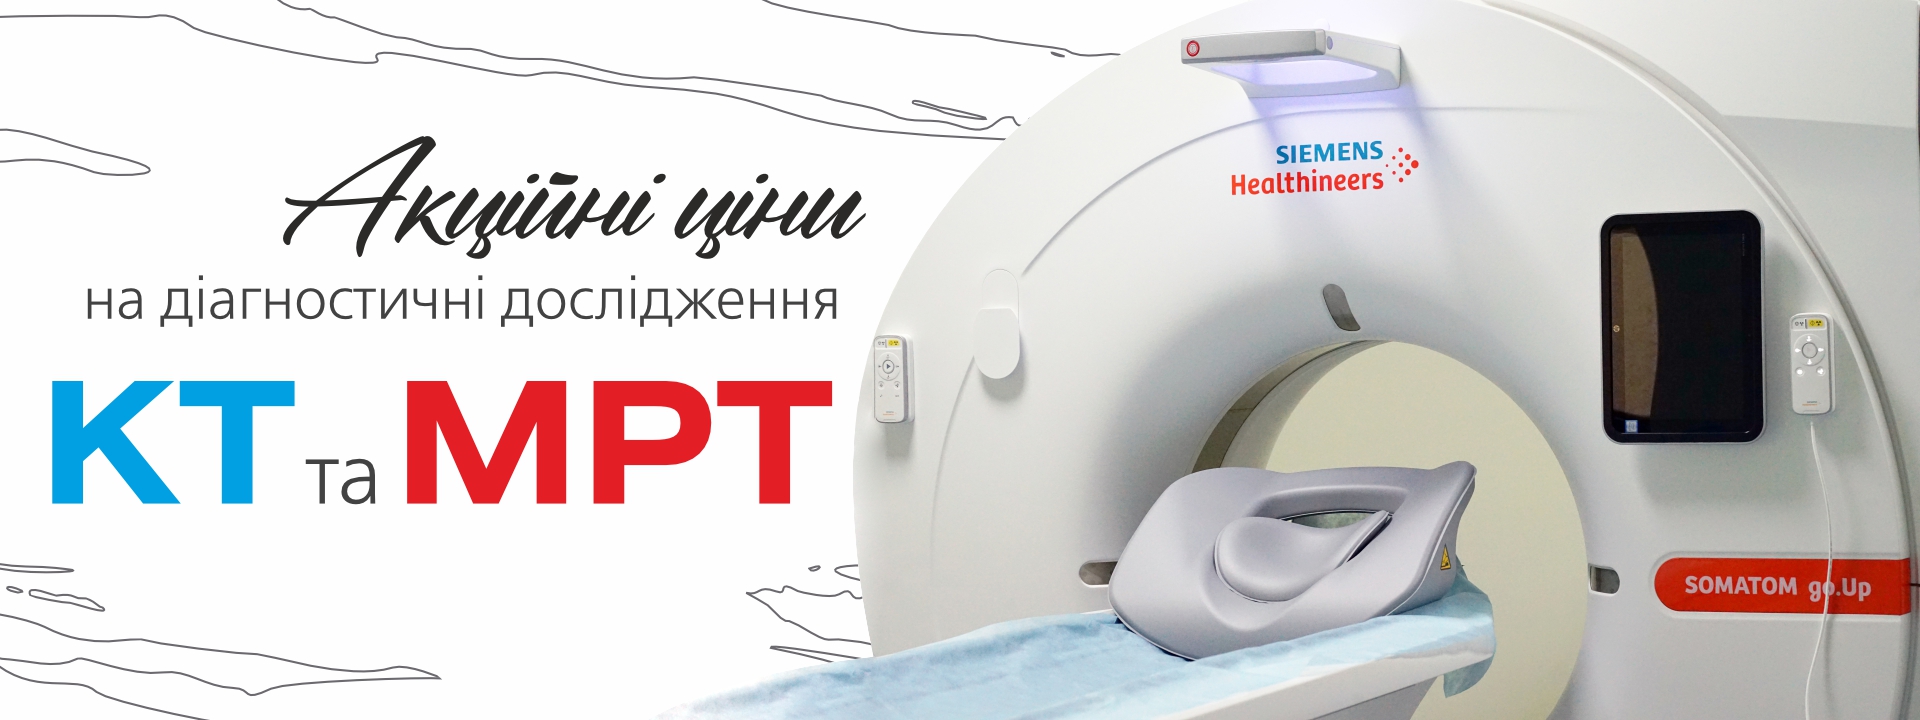 Акційні пропозиції на діагностику КТ та МРТ - 3 - svekaterina.ua